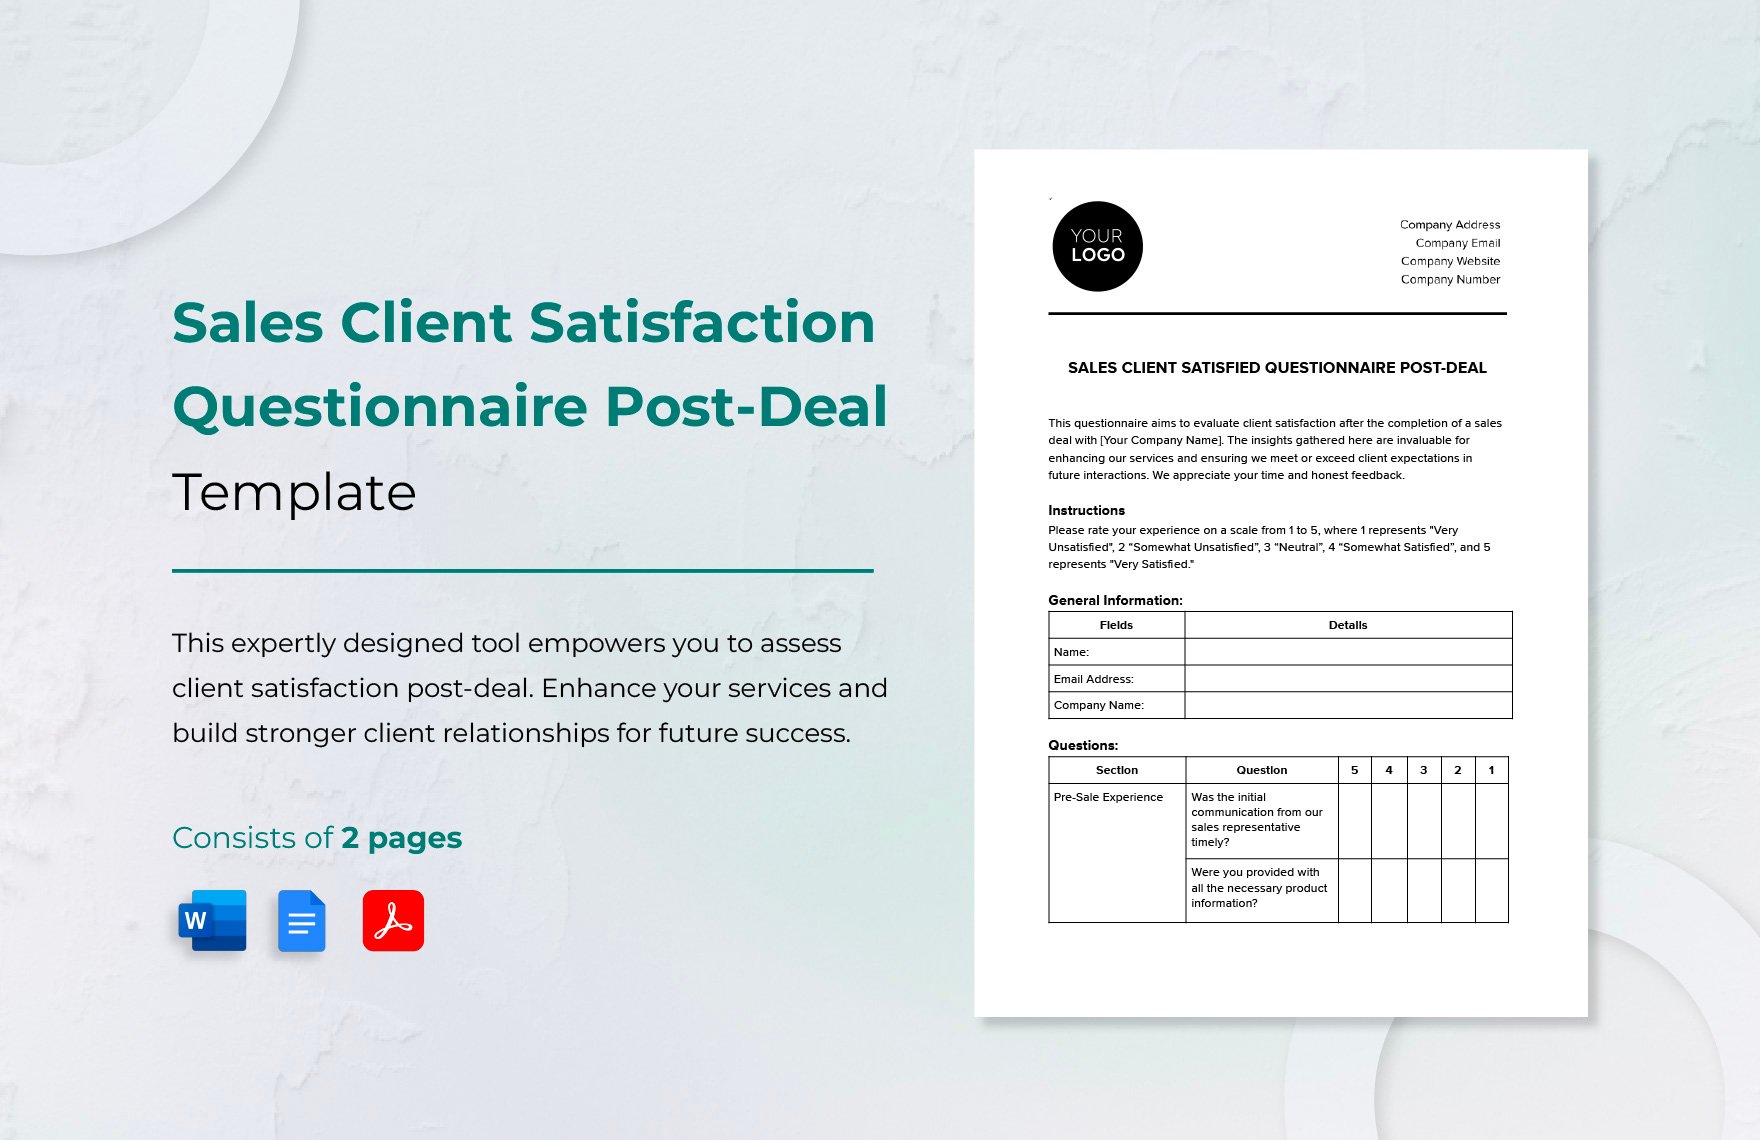 Sales Client Satisfaction Questionnaire Post-Deal Template